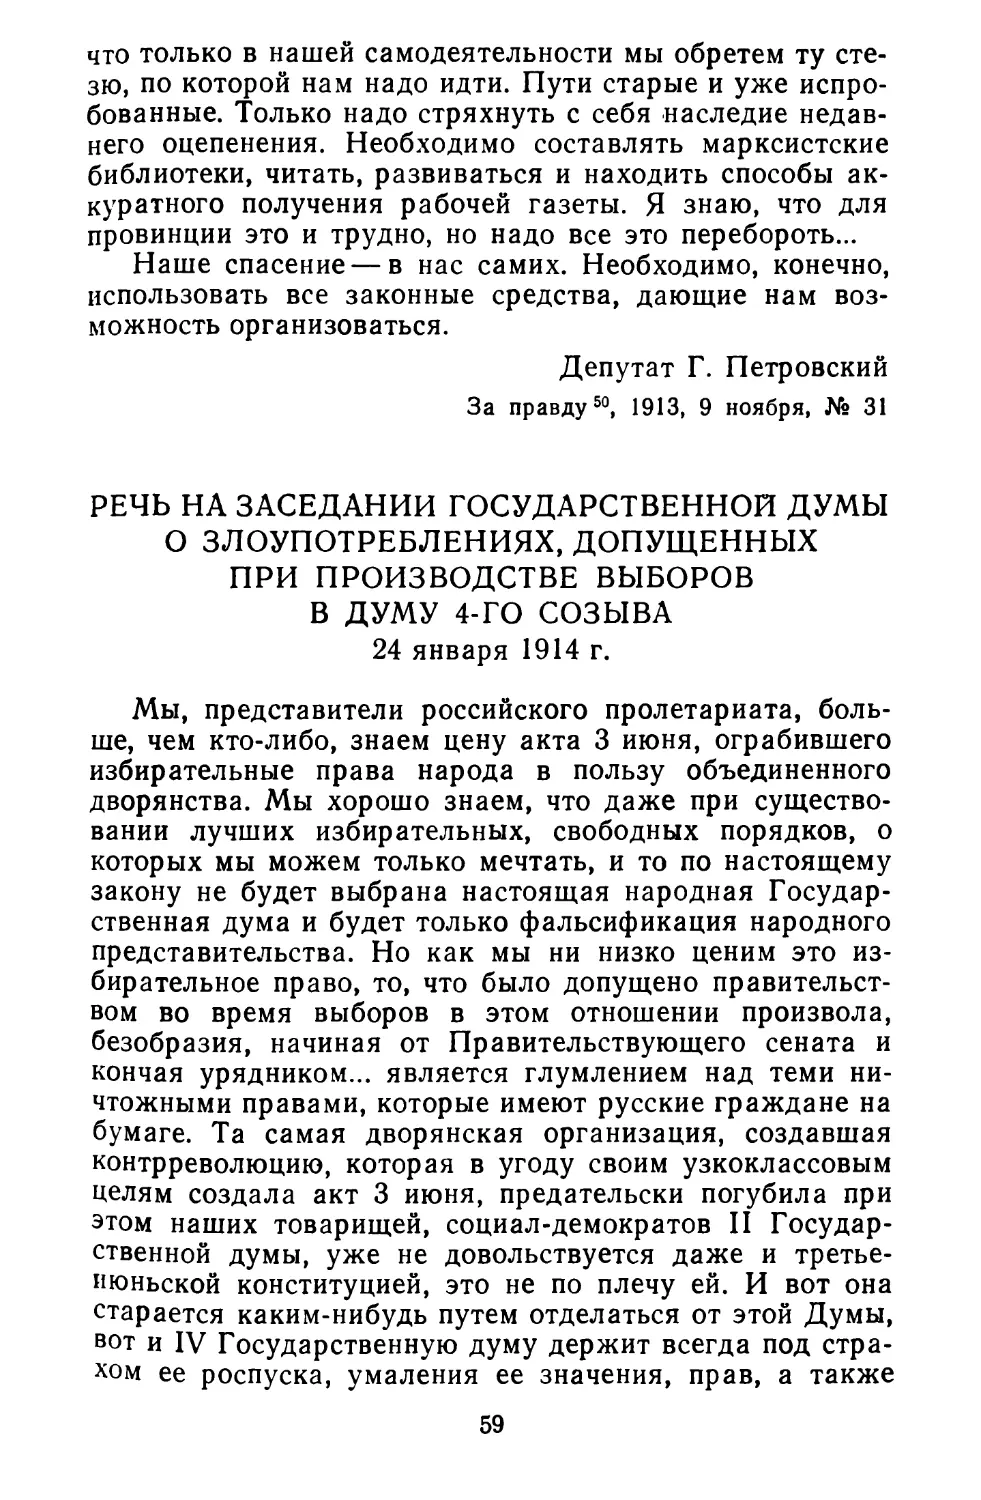 Речь на заседании Государственной думы о злоупотреблениях, допущенных при производстве выборов в Думу 4-го созыва. 24 января 1914 г.